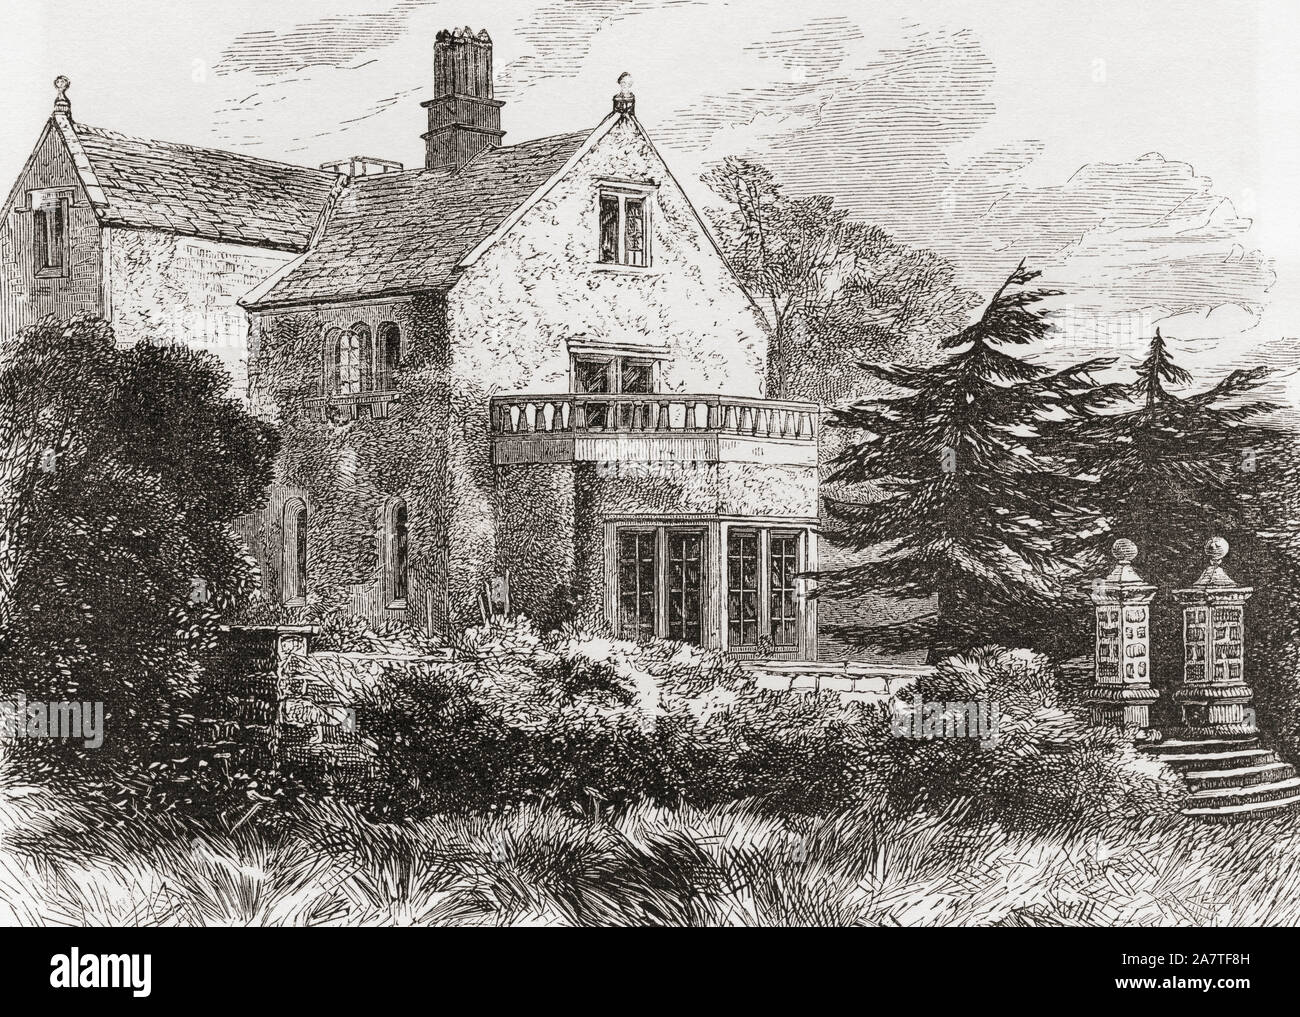 La casa de Florence Nightingale, Lea Hurst, Derbyshire, Inglaterra, visto aquí en el siglo XIX. Fotos de inglés, publicado el año 1890. Foto de stock